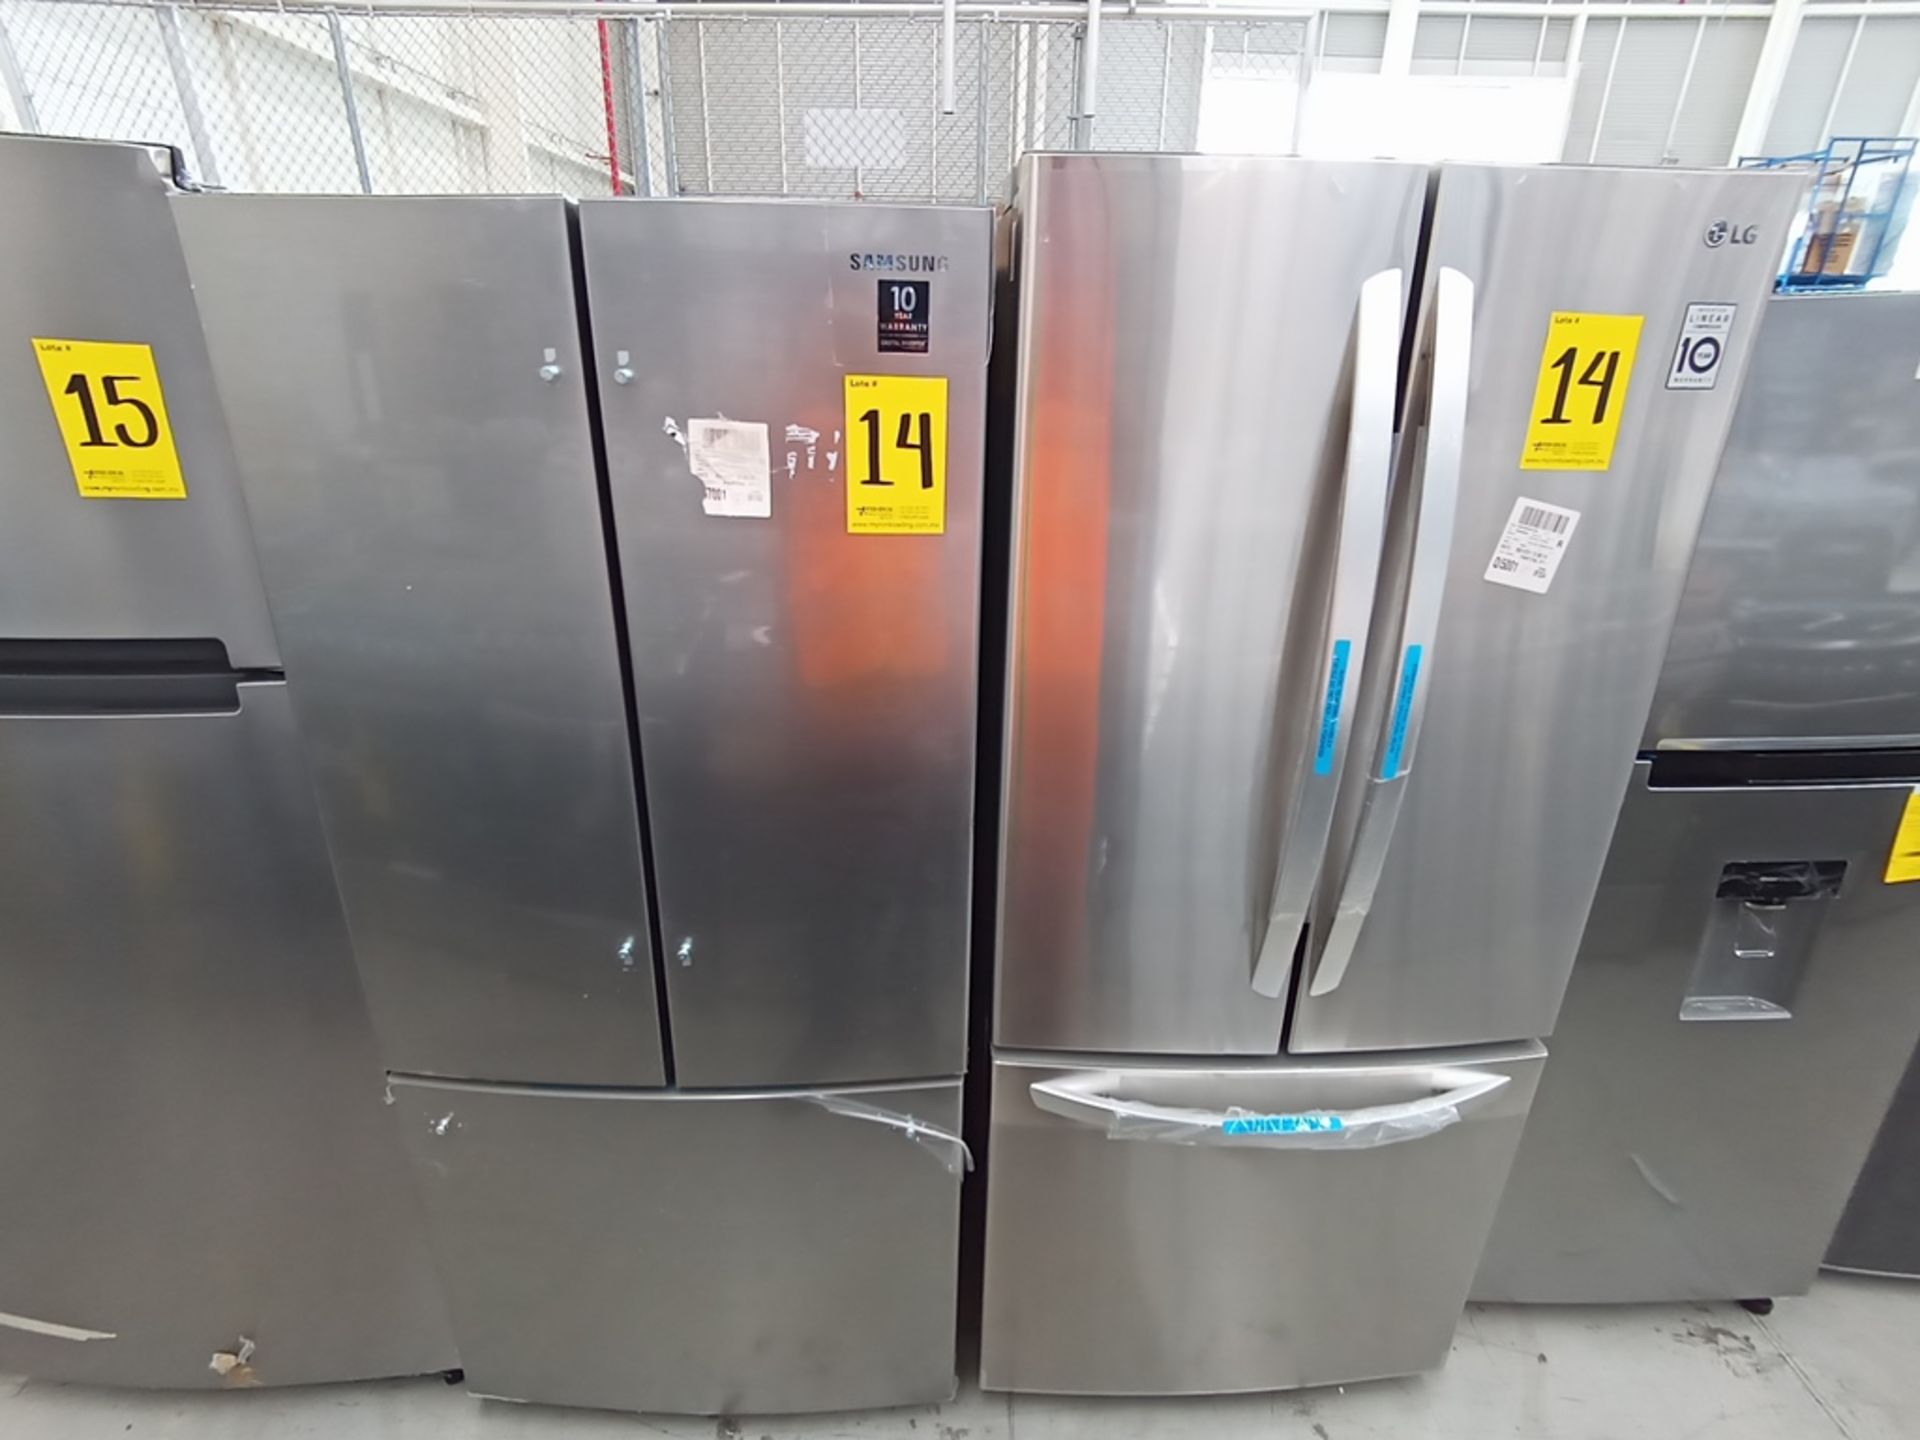 Lote de 2 refrigeradores contiene: 1 Refrigerador Marca LG, Modelo GF22BGSK, Serie 107MRMD4S595, Co - Image 6 of 16